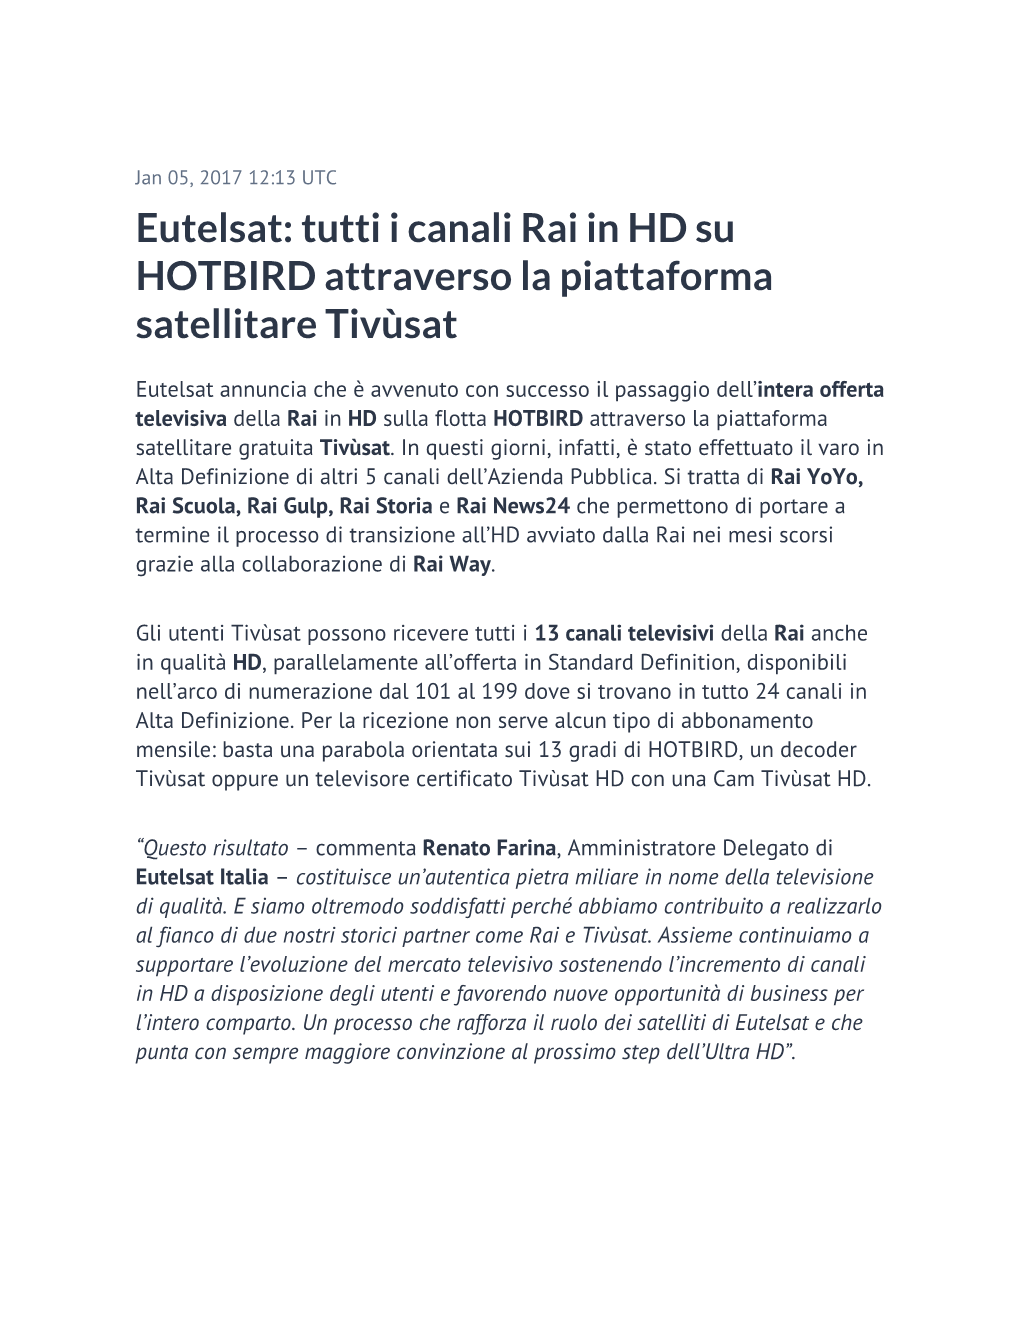 Eutelsat: Tutti I Canali Rai in HD Su HOTBIRD Attraverso La Piattaforma Satellitare Tivùsat